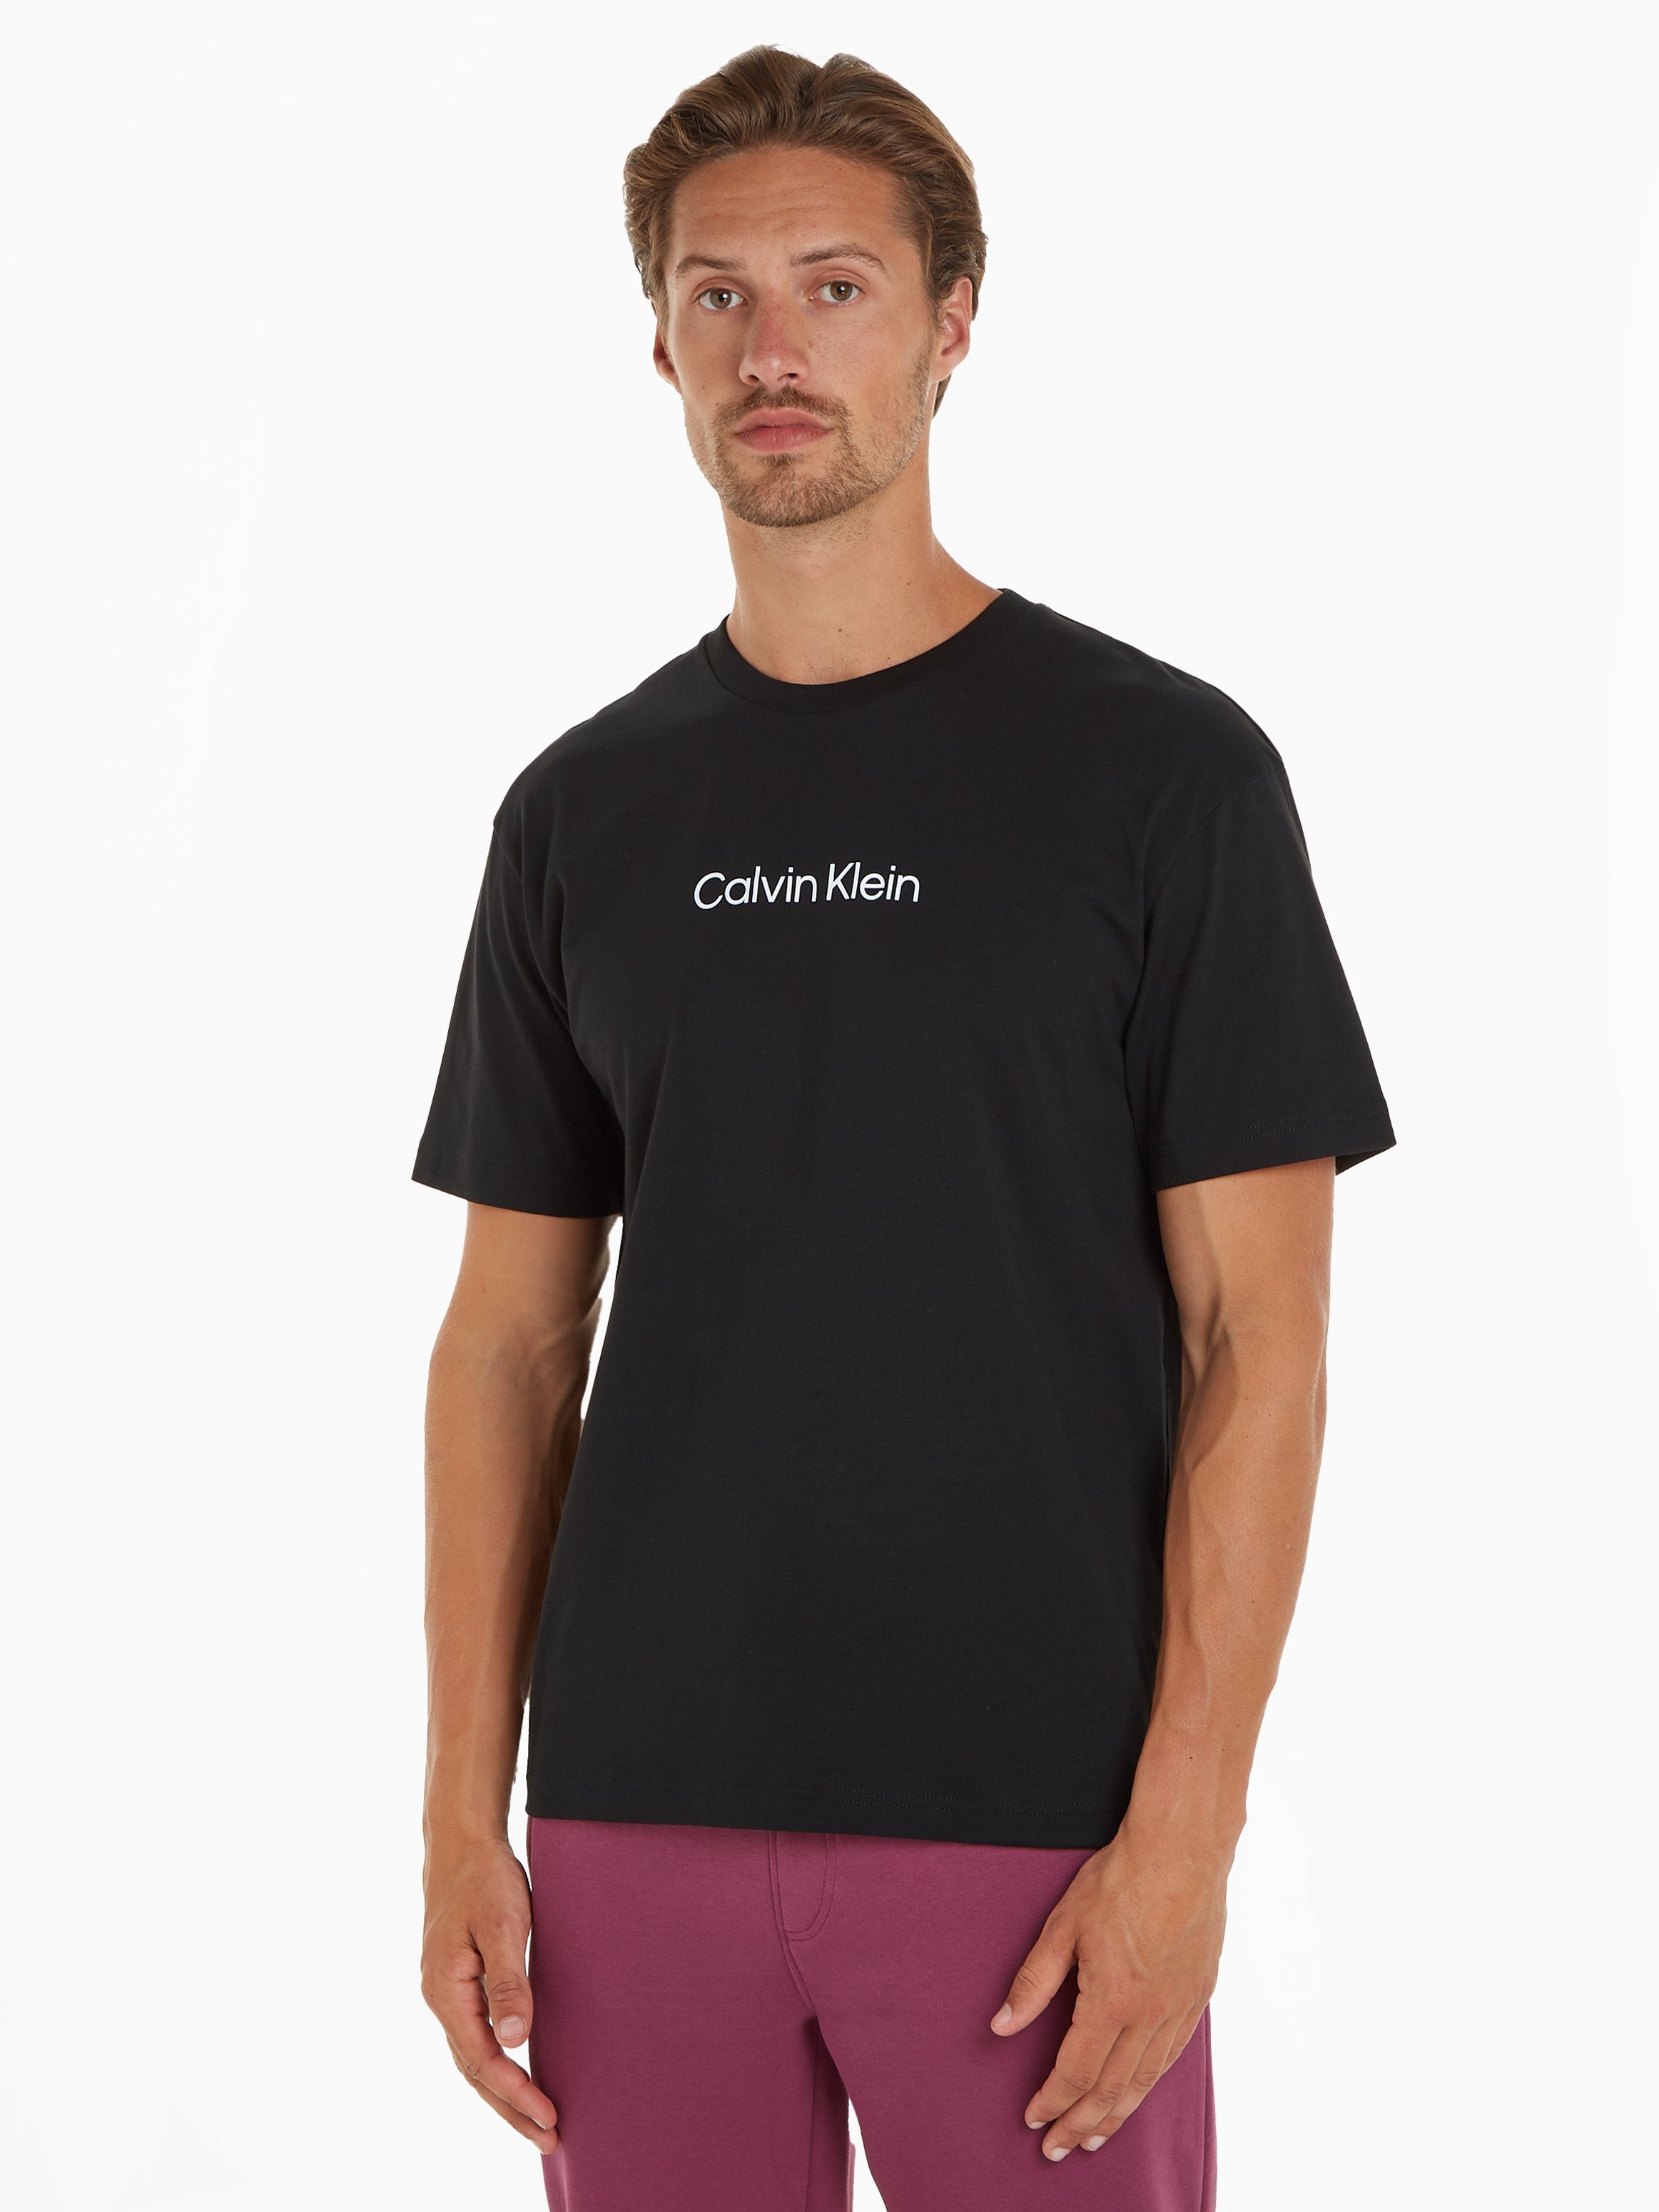 Vollständiges Produktsortiment! Calvin Klein aufgedrucktem Markenlabel LOGO T-SHIRT T-Shirt COMFORT schwarz HERO mit